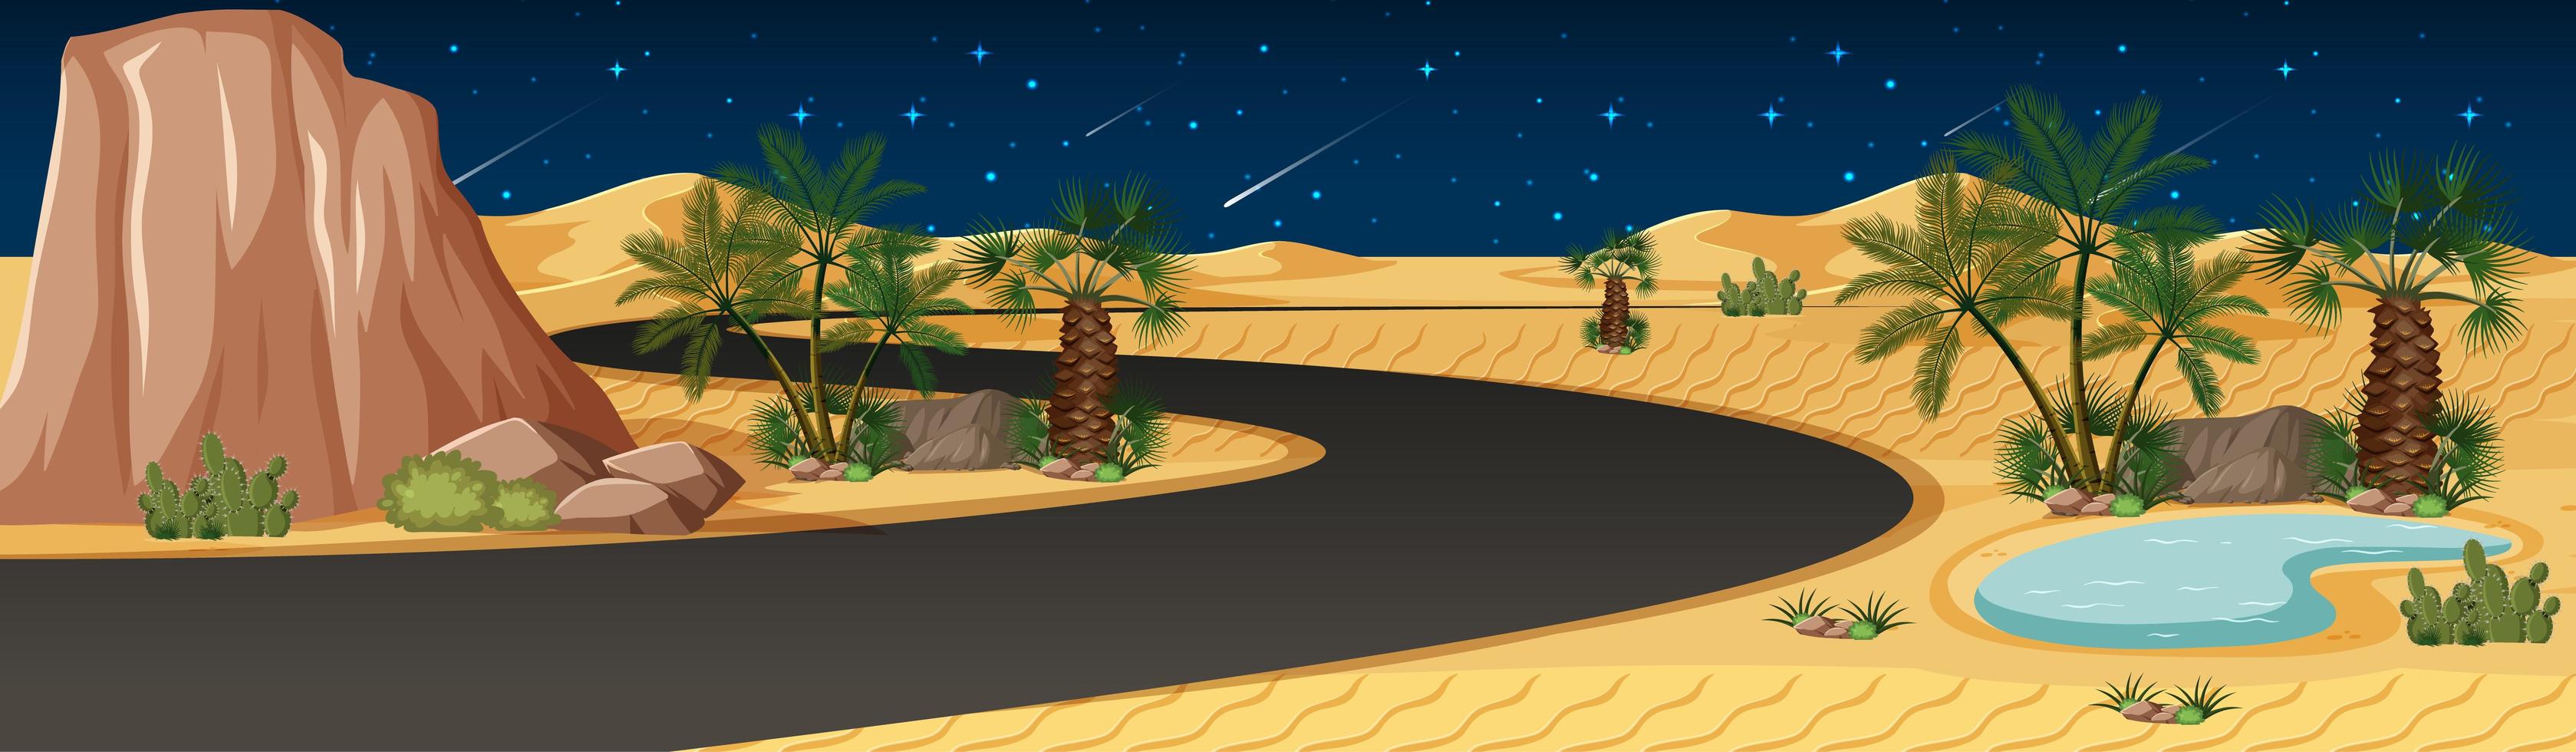 oásis no deserto com longa estrada à noite vetor